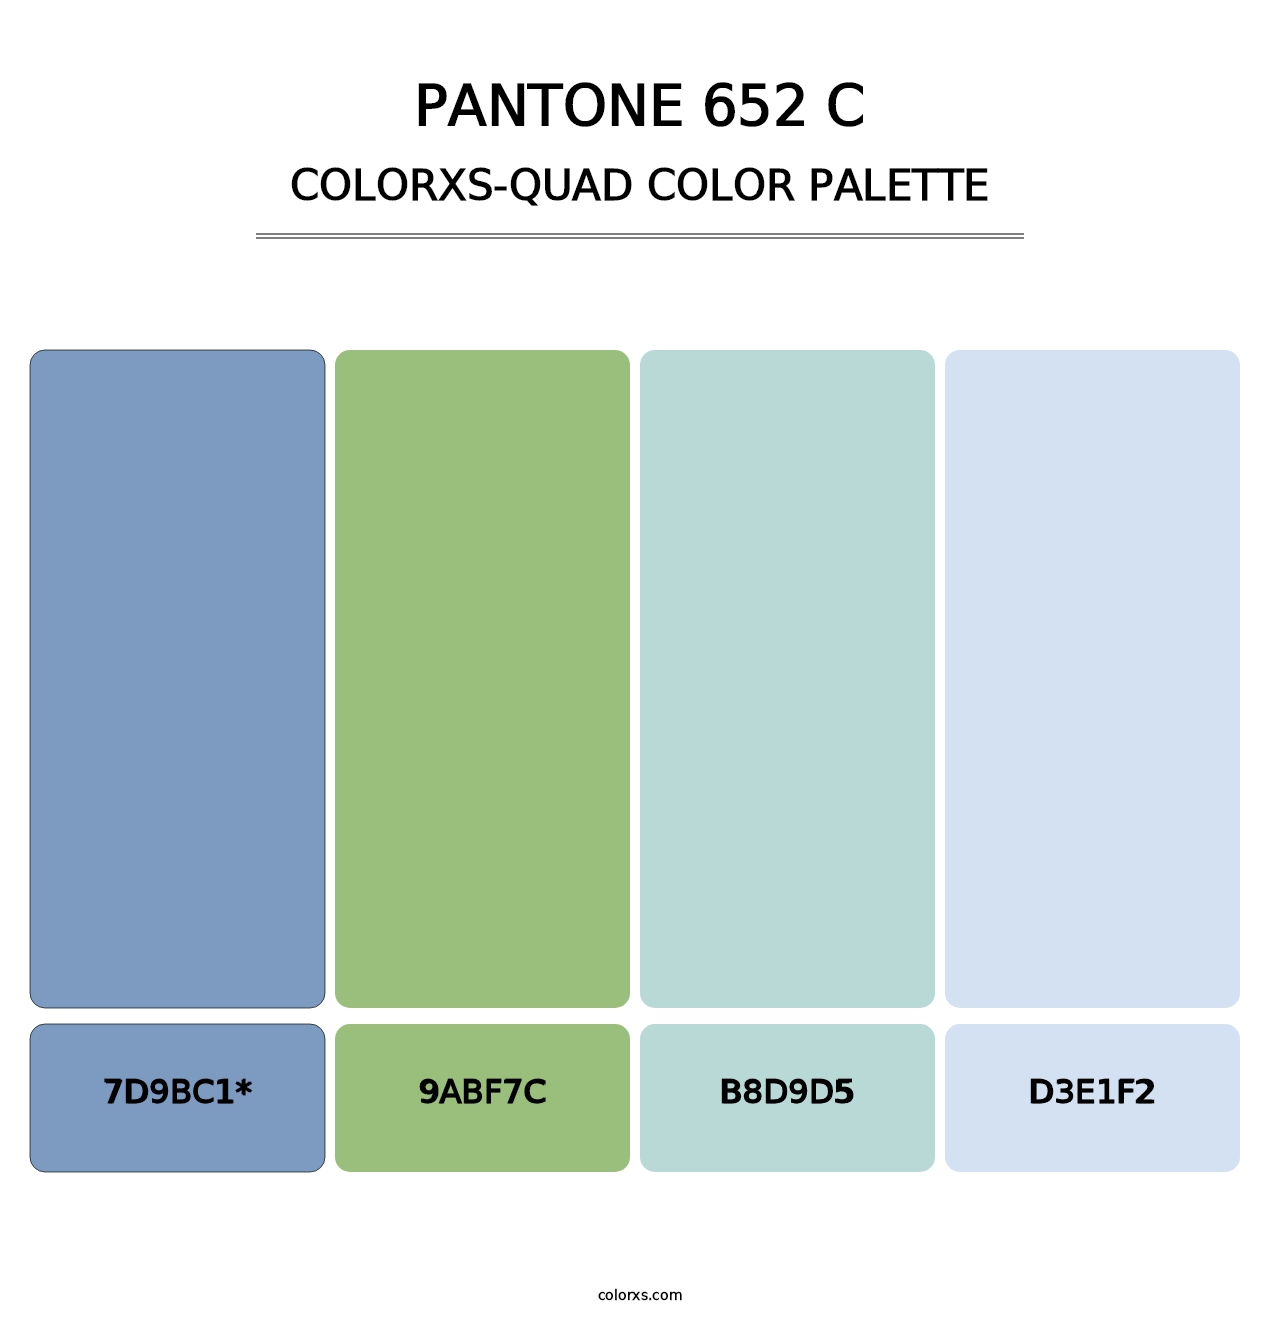 PANTONE 652 C - Colorxs Quad Palette